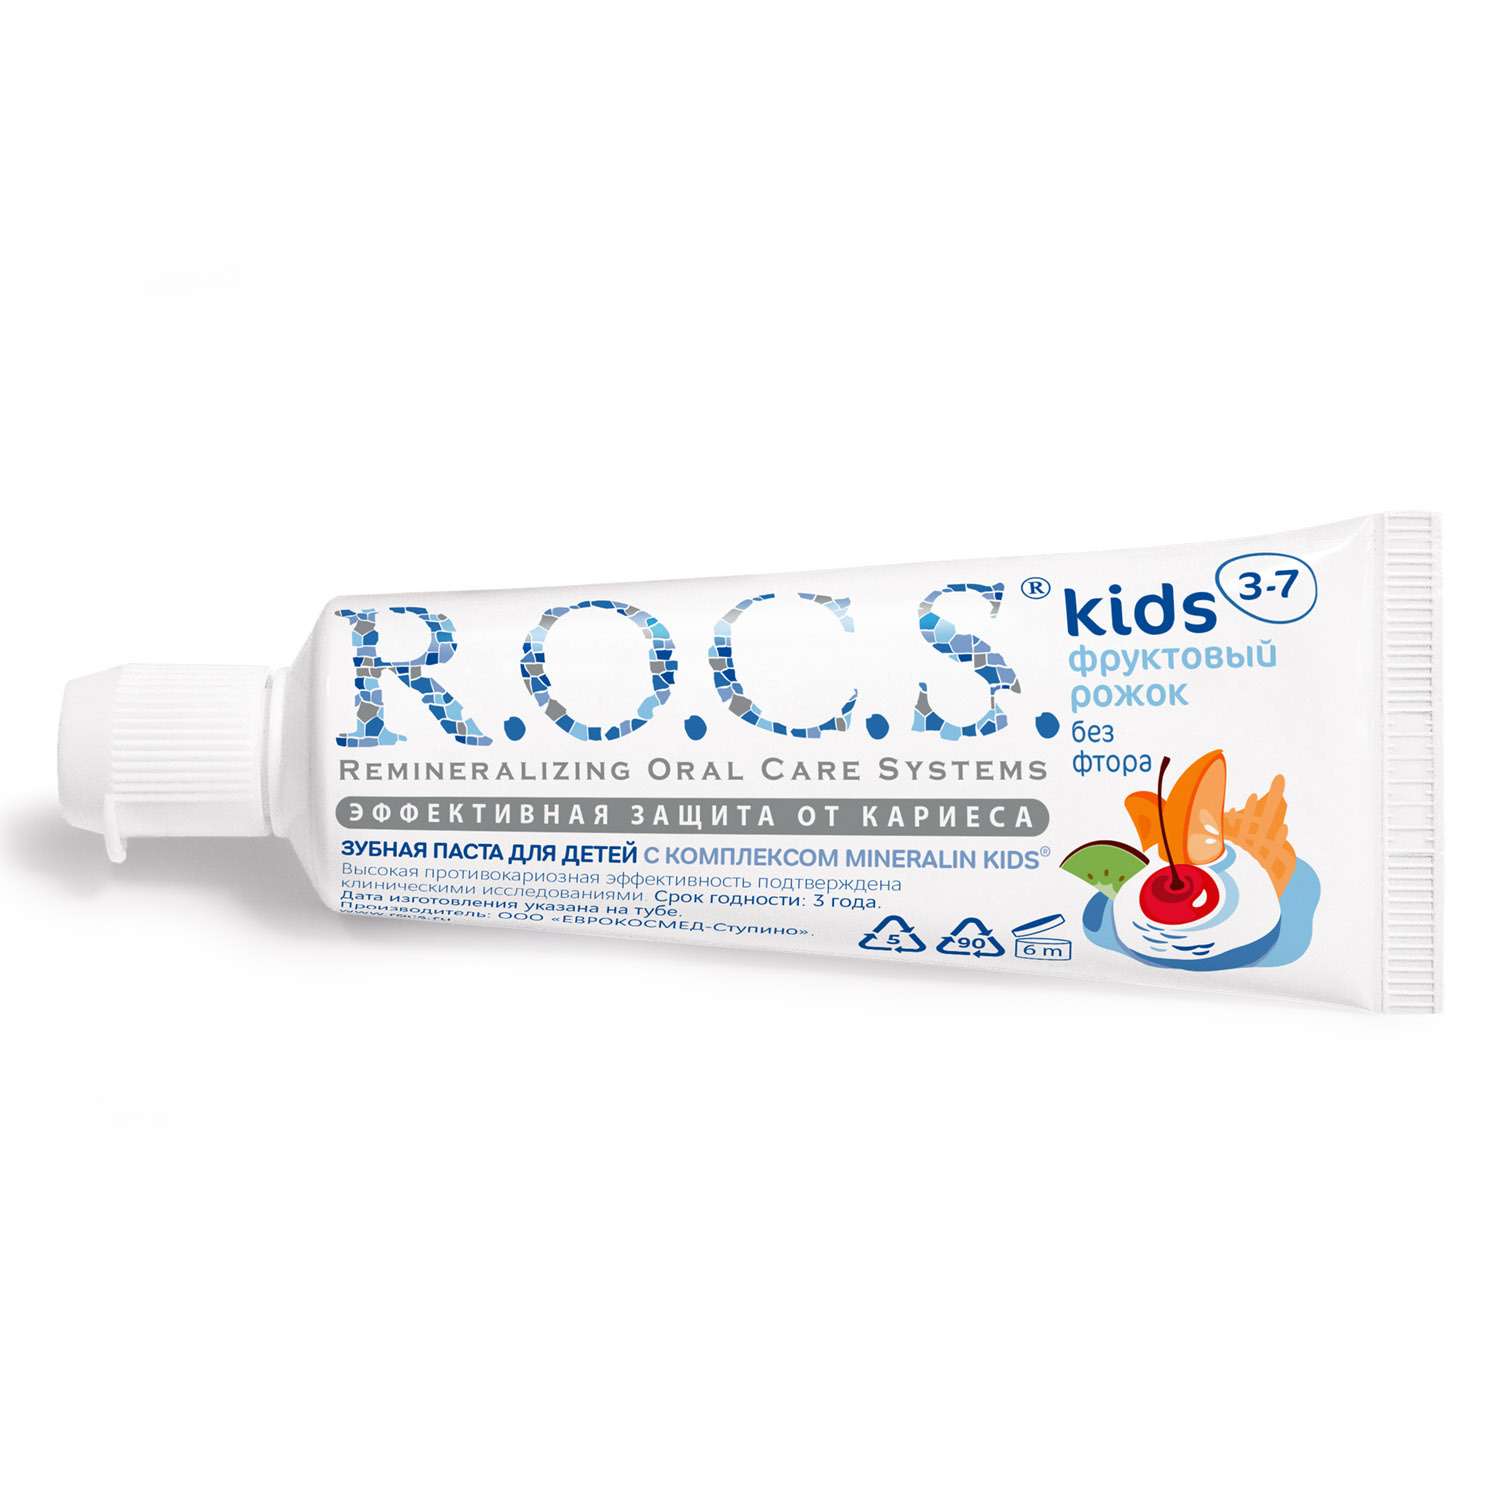 Зубная паста R.O.C.S. Kids Фруктовый рожок без фтора со вкусом мороженого - фото 1